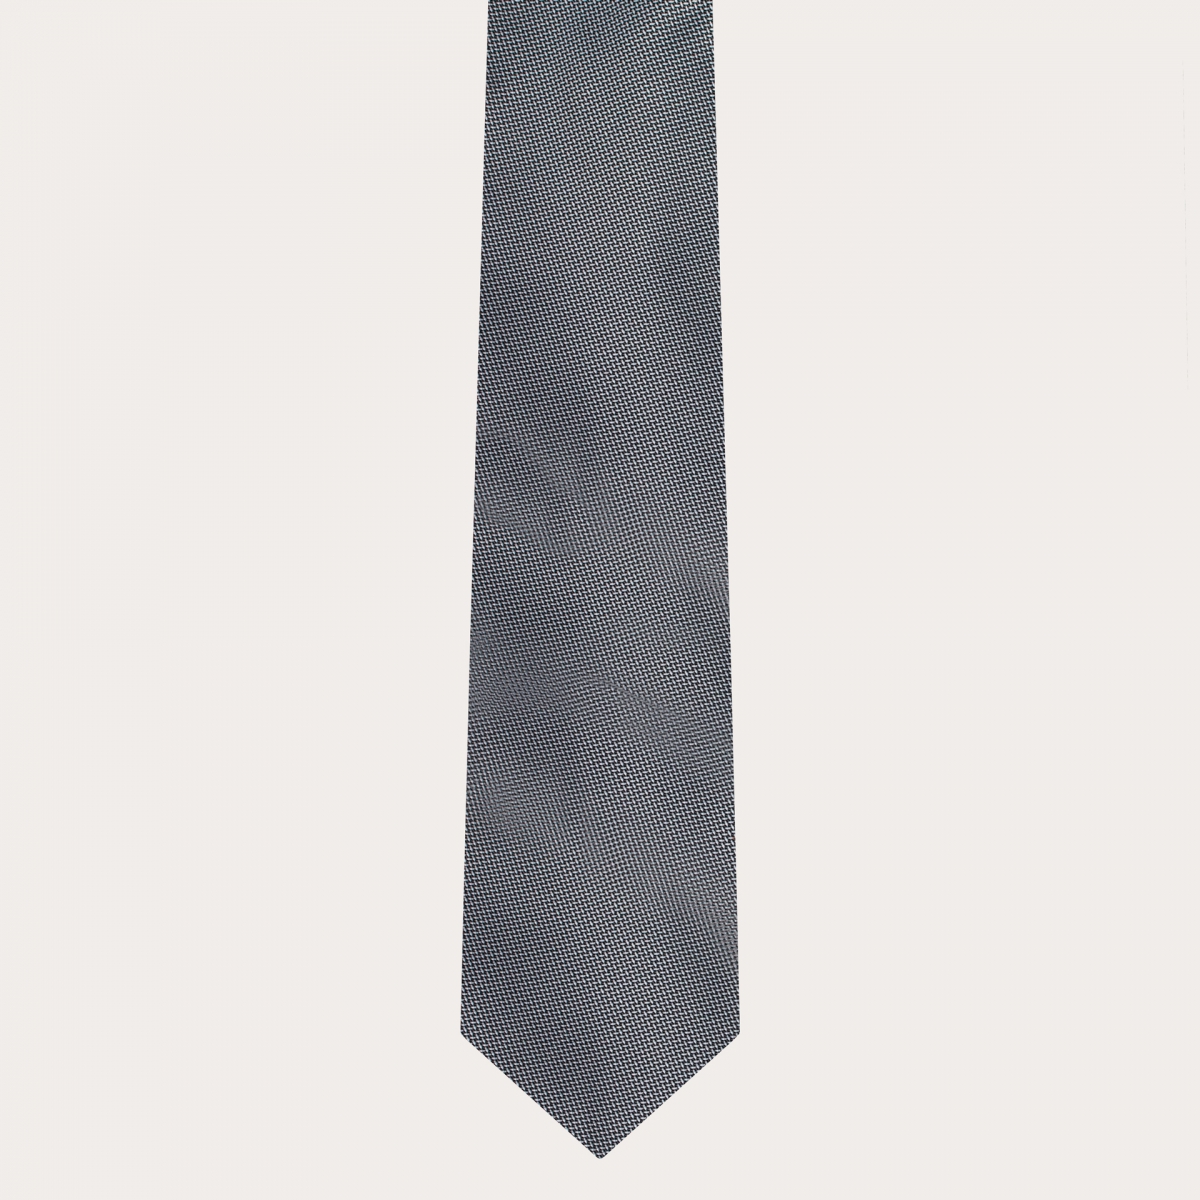 BRUCLE Abgestimmtes Set aus Dünne Hosenträgern und Krawatte aus eleganter grauer gepunkteter Seide